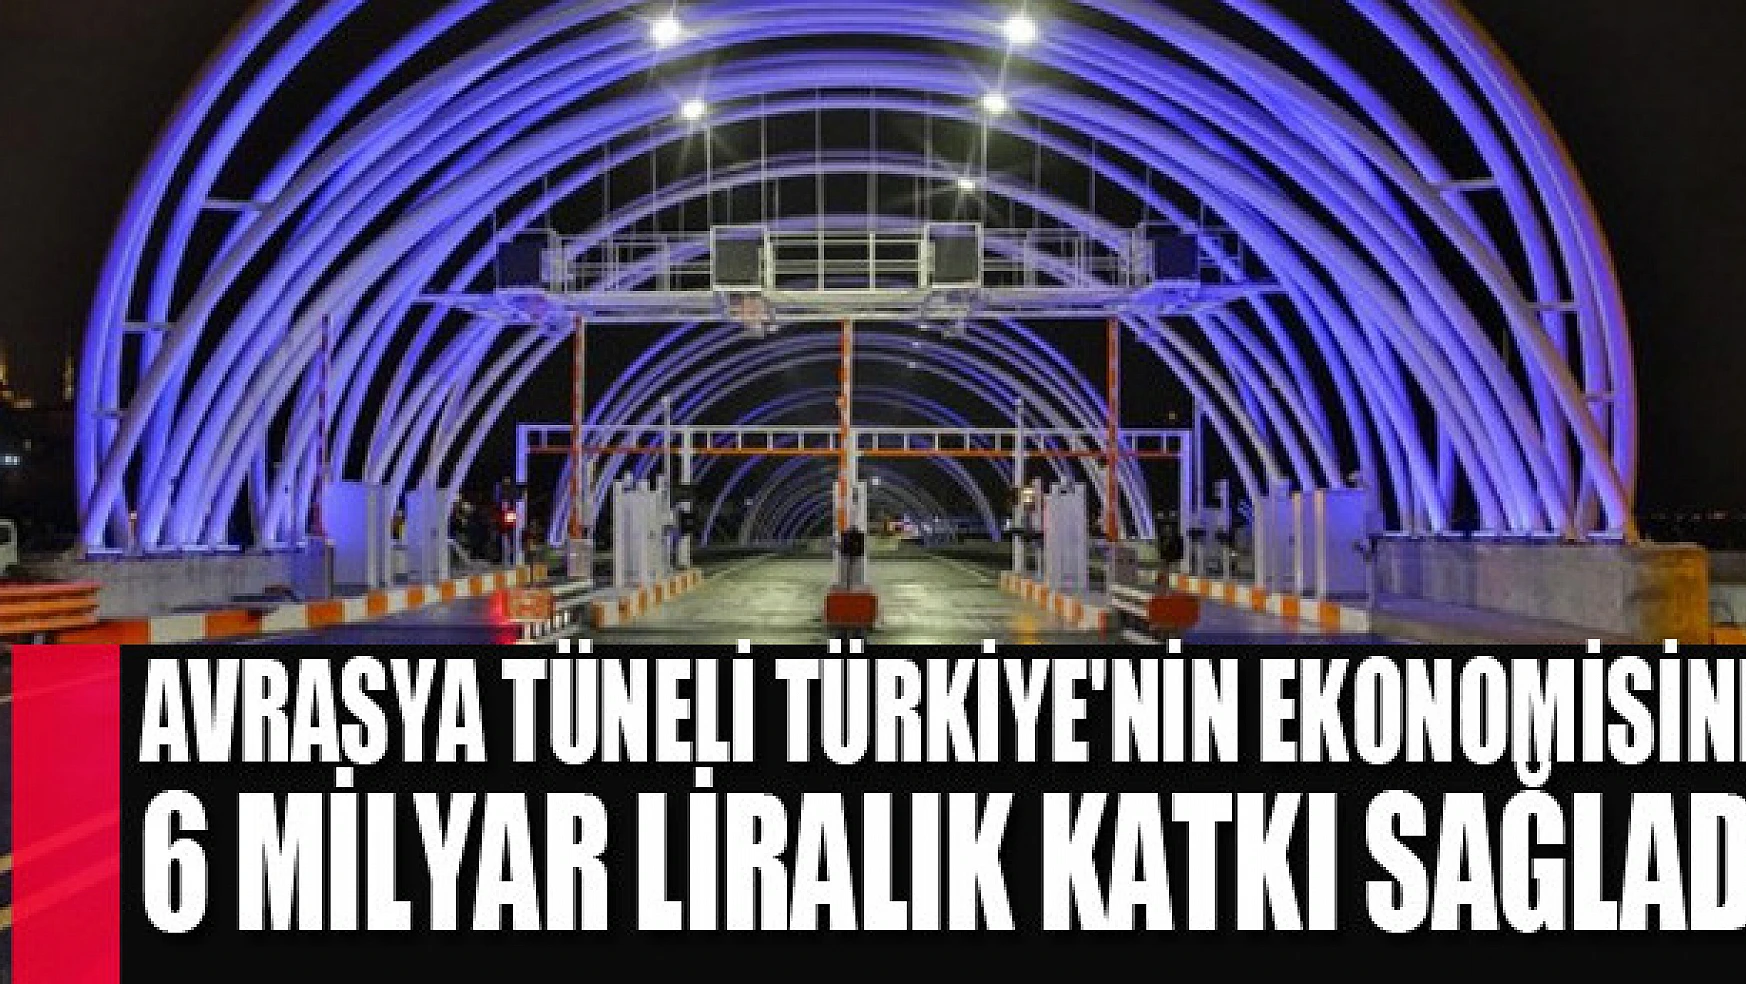 Avrasya Tüneli Türkiye'nin ekonomisine 6 milyar liralık katkı sağladı